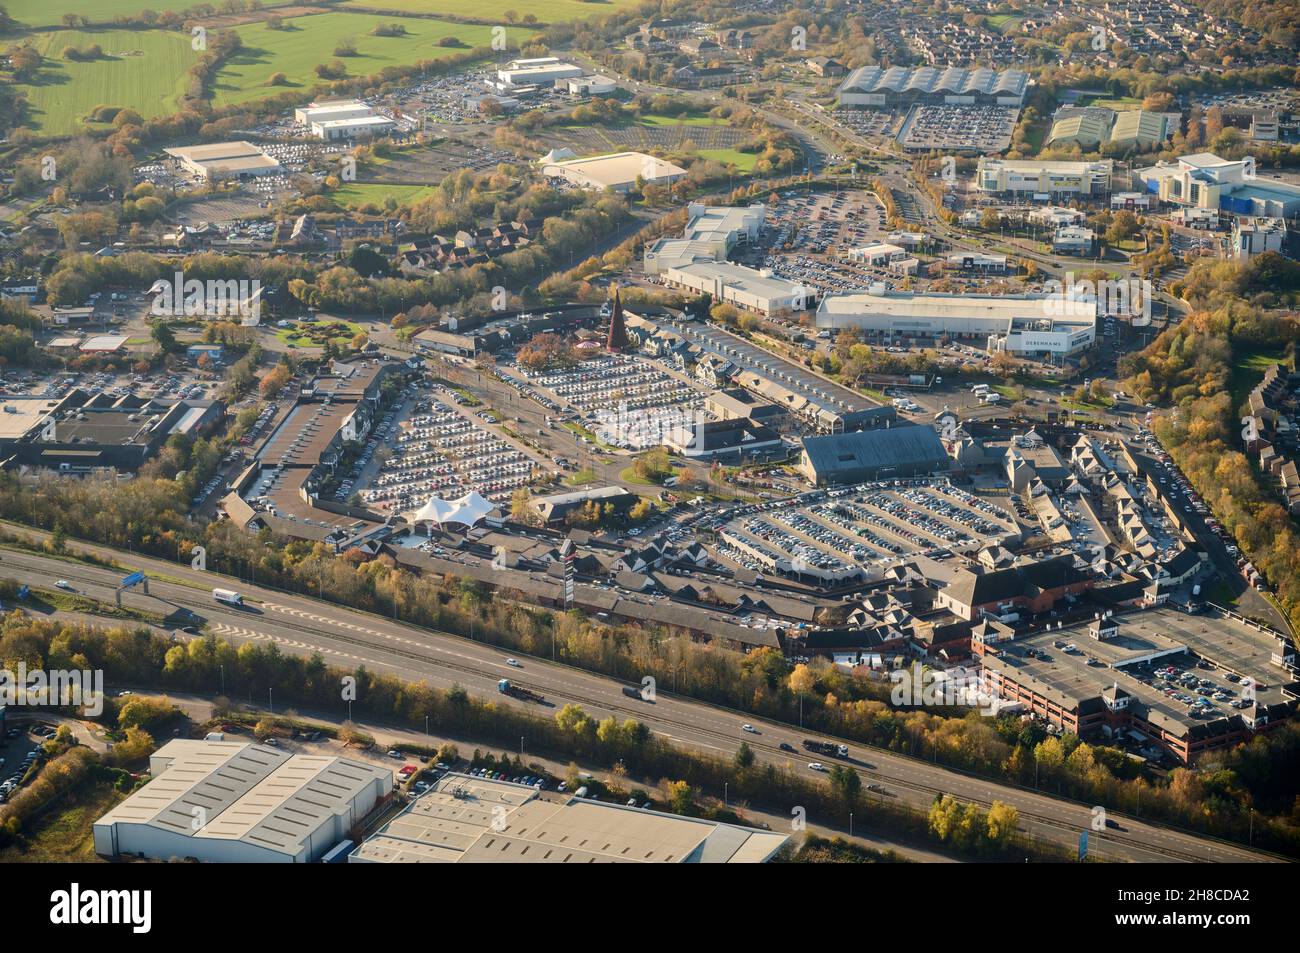 Ein Luftbild des Einkaufszentrums Cheshire Oaks, Parkplatz voller Weihnachtseinkäufer, Ellesmere Port, Merseyside, Nordwestengland, Großbritannien Stockfoto